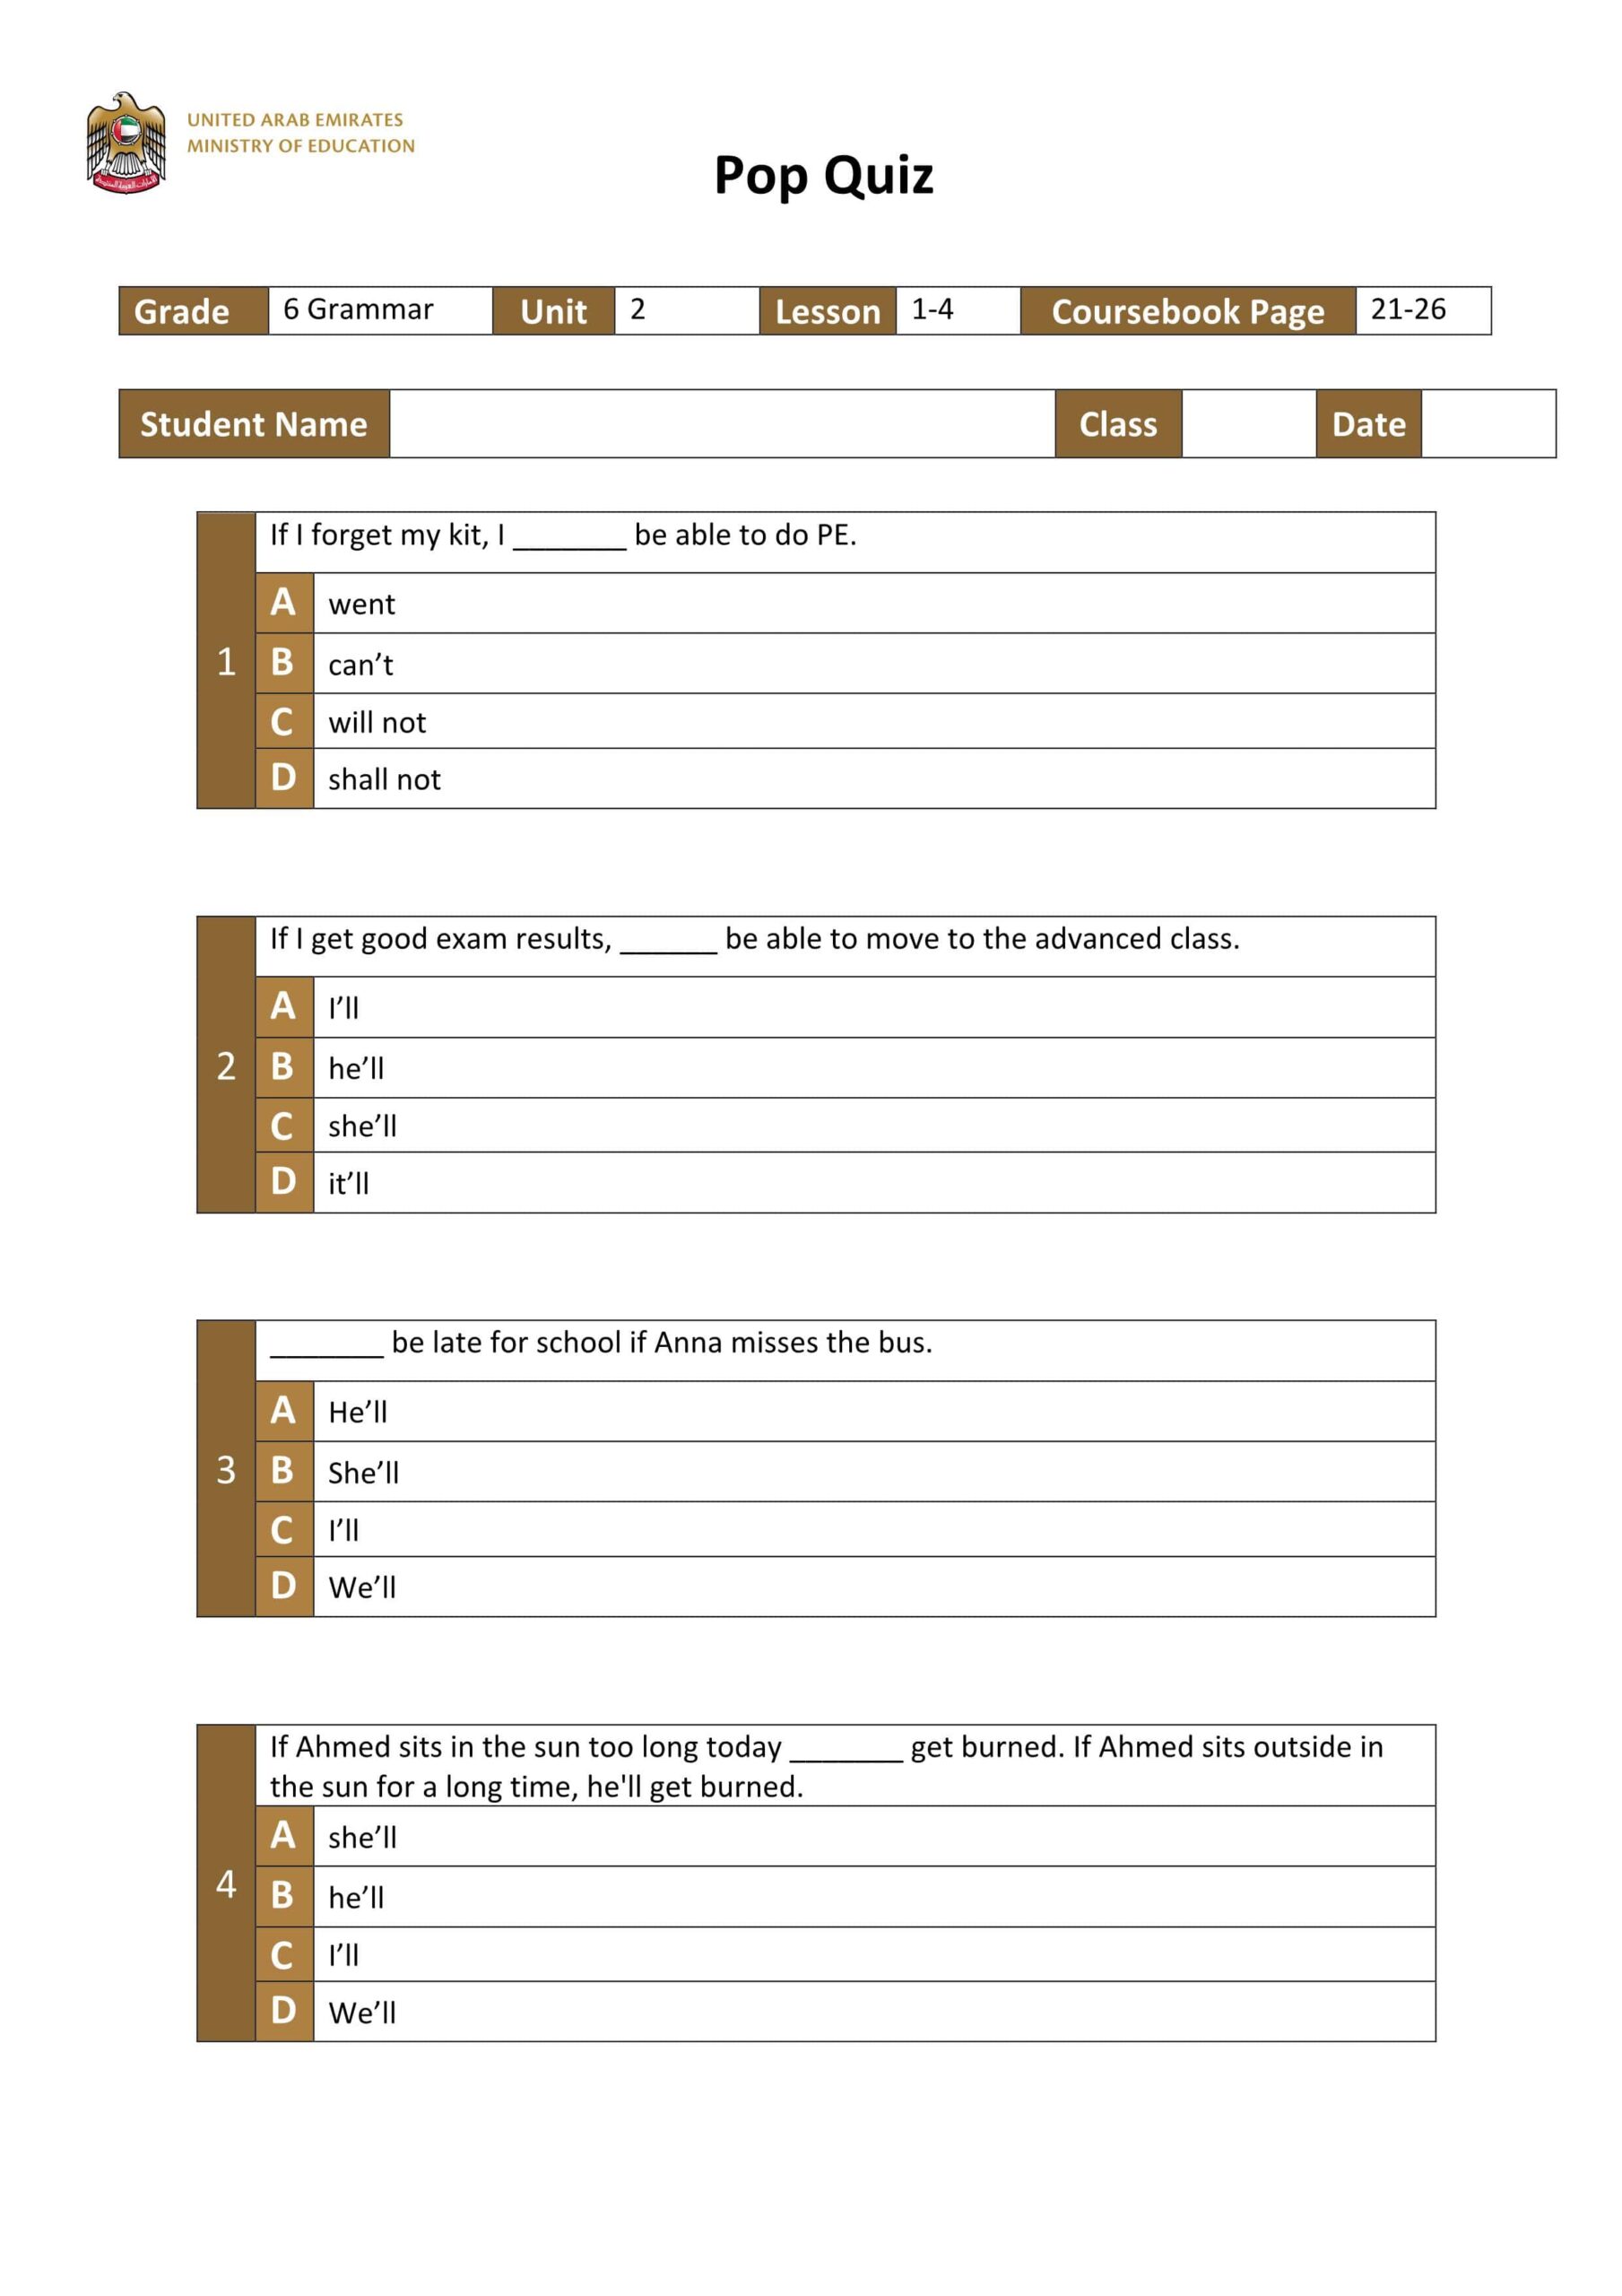 حل أوراق عمل Pop Quiz Unit 2 Lesson 1-4 اللغة الإنجليزية الصف السادس